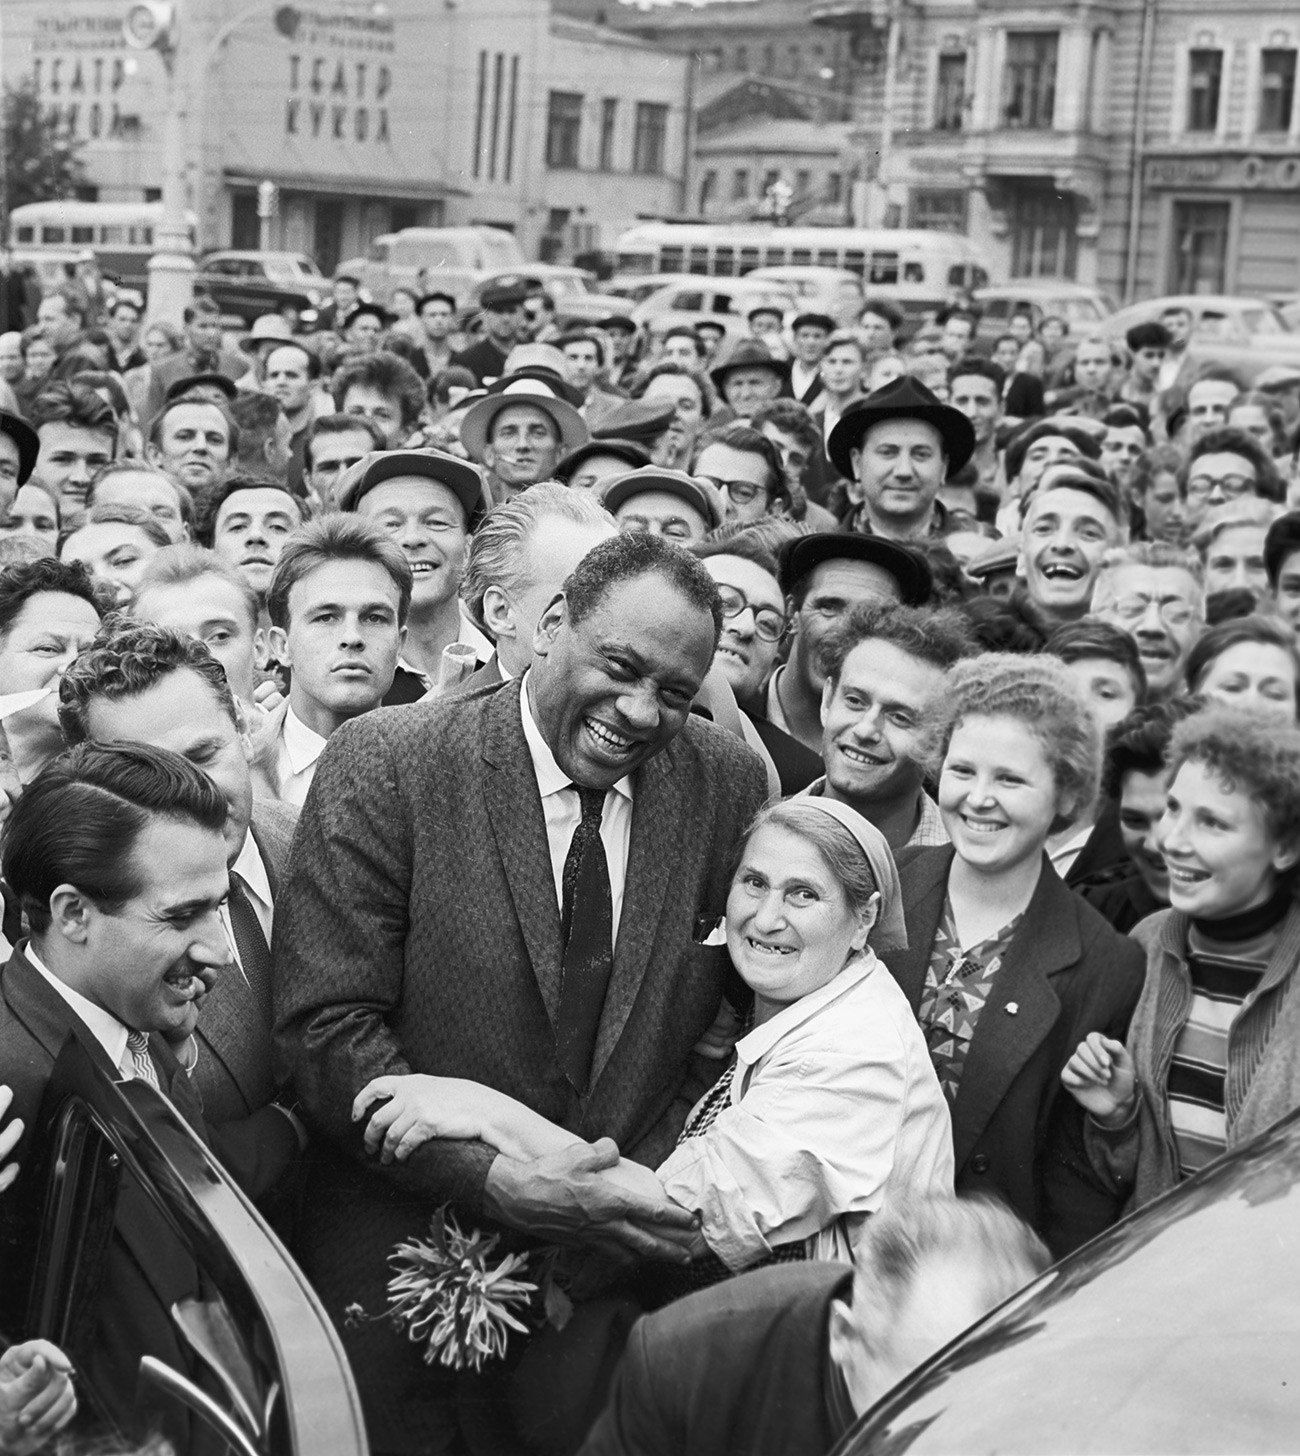 Paul Leroy Robeson, ameriški pevec in član Svetovnega sveta za mir, na ulici v Moskvi